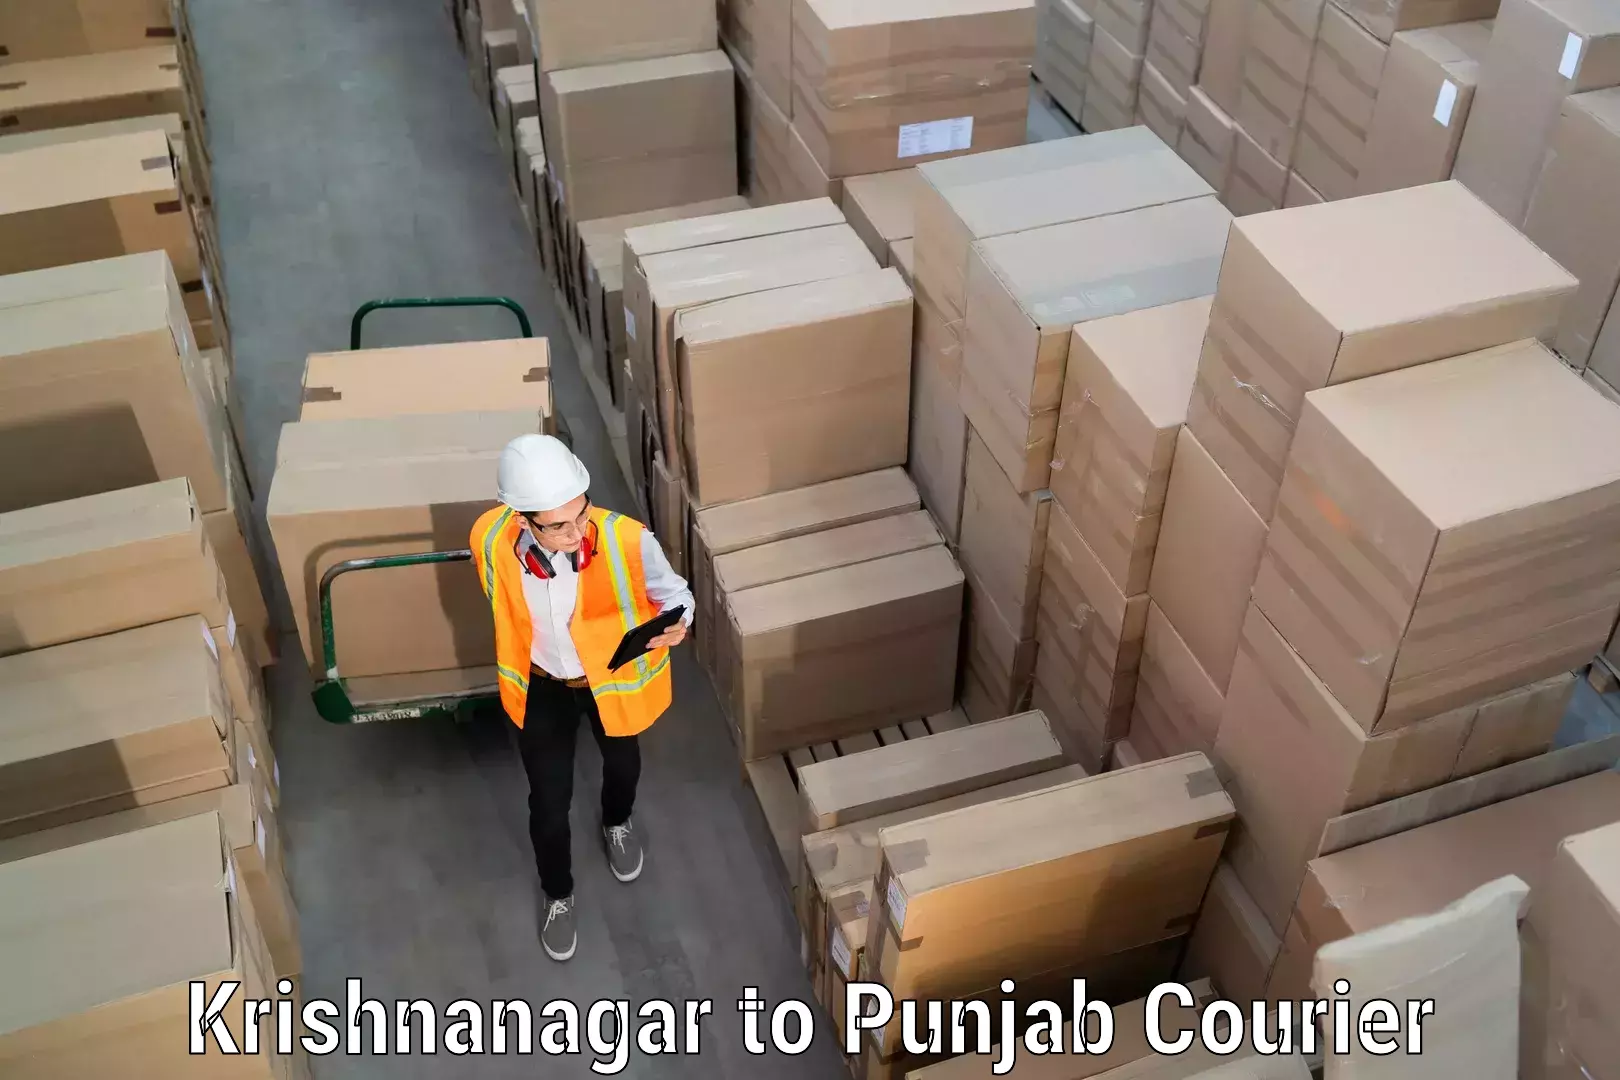 Household goods transport service Krishnanagar to Punjab